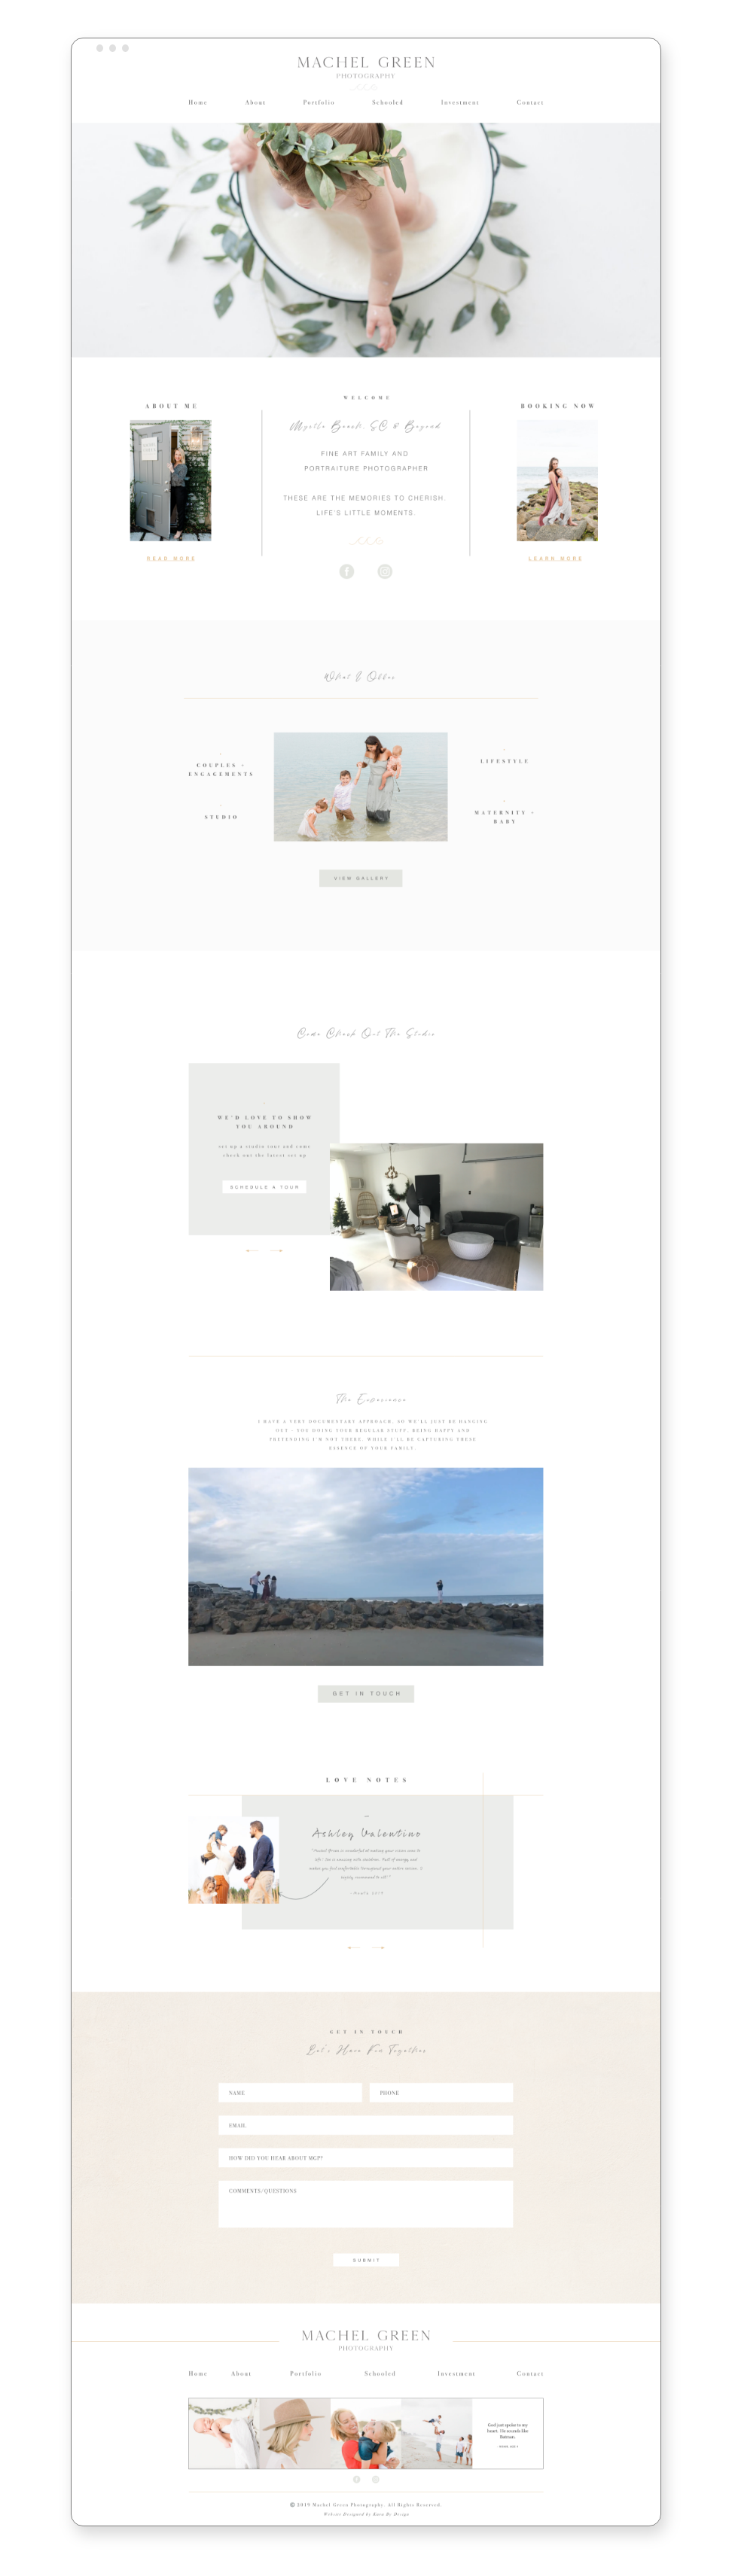 Machel's Website Design